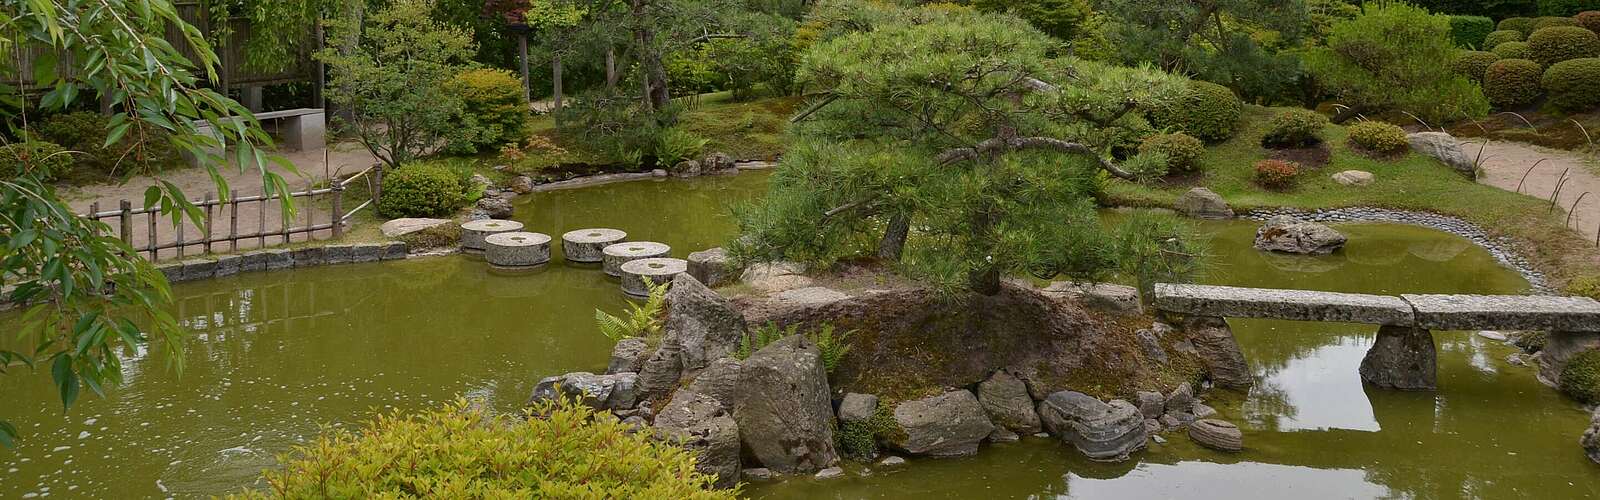 Insel mit Kiefern im japanischen Bonsaigarten,
        
    

        Foto: TMB-Fotoarchiv/Matthias Schäfer